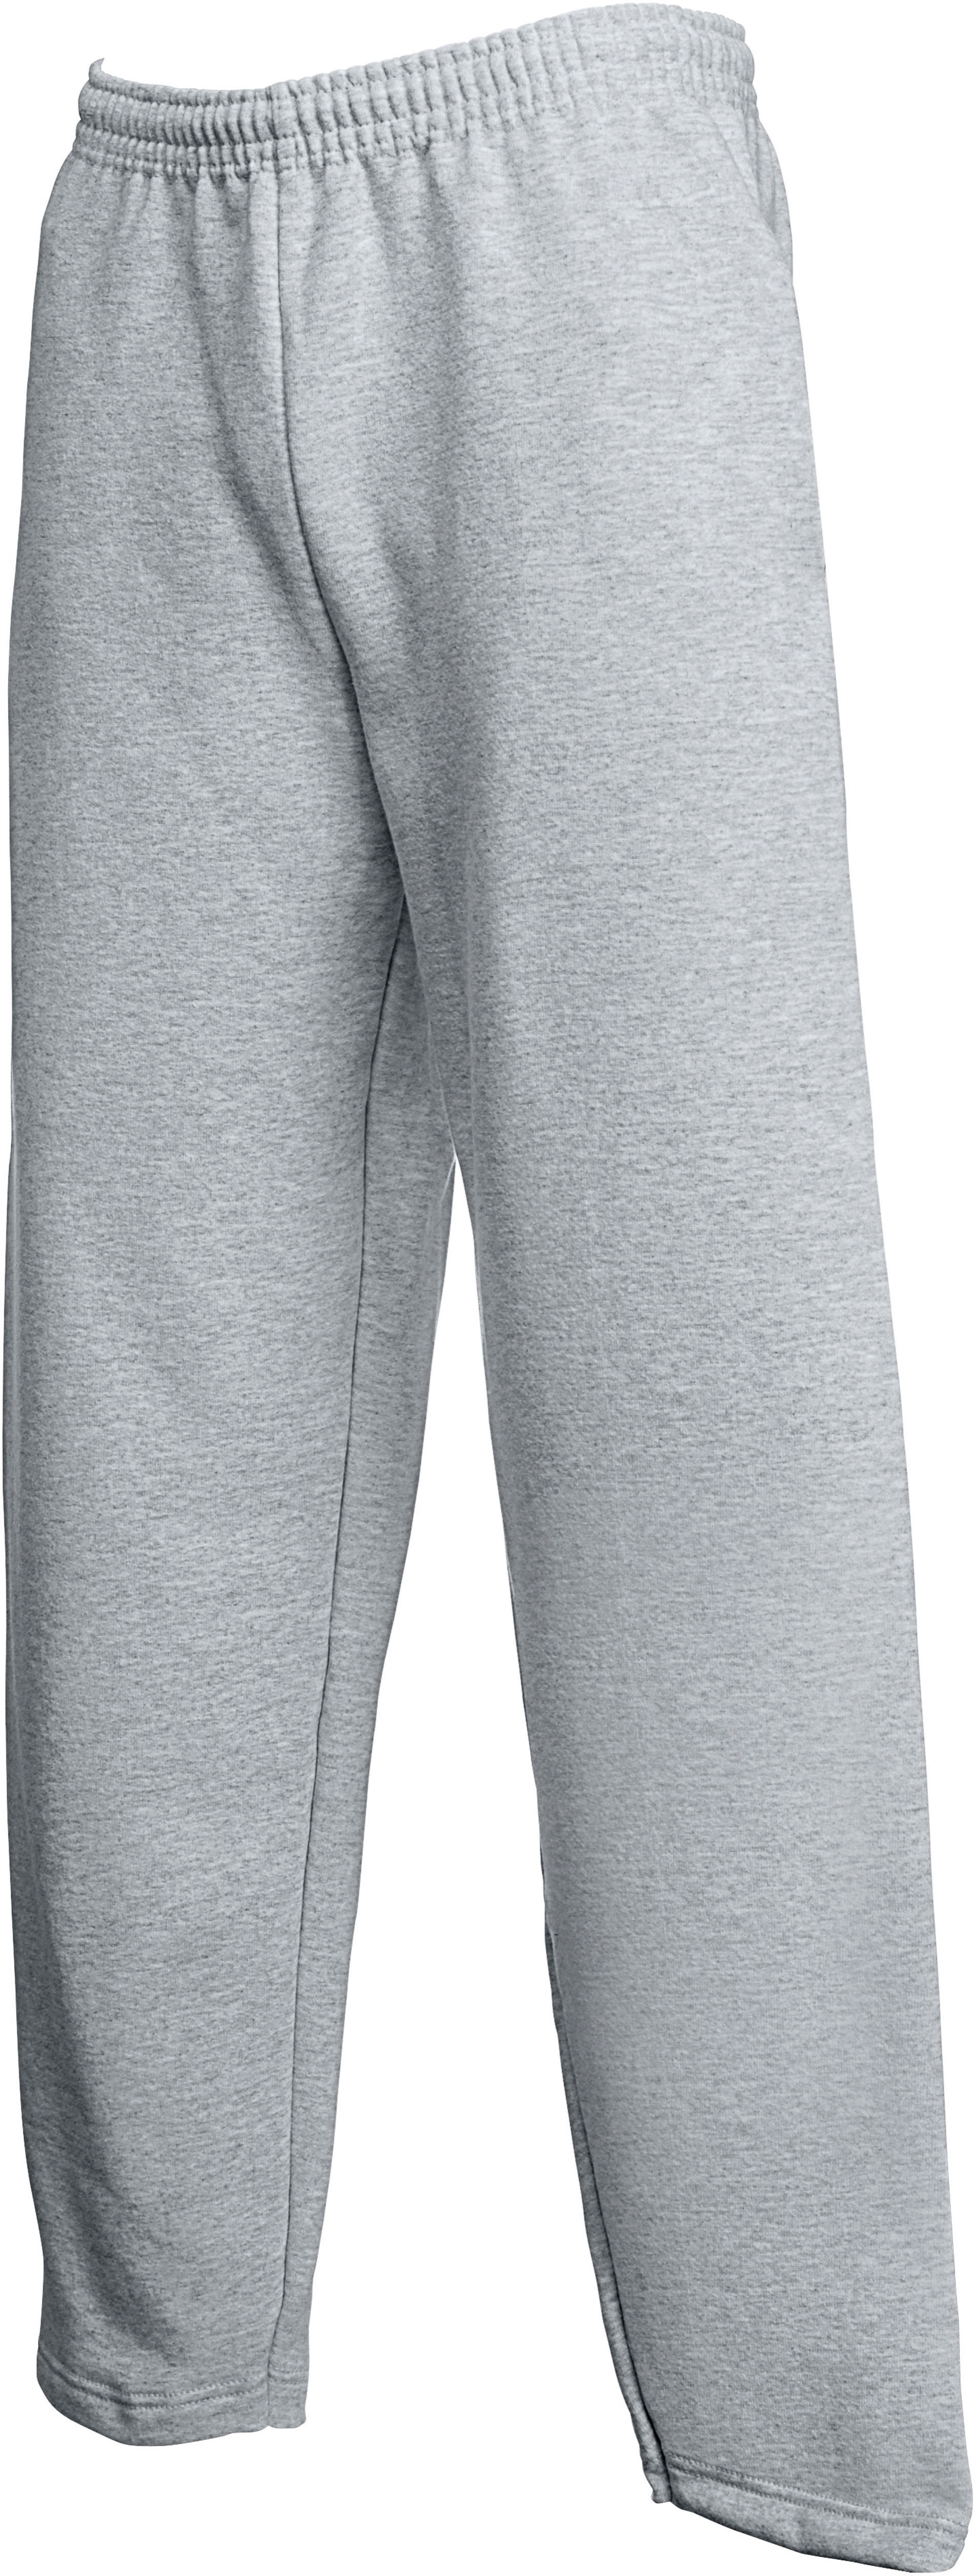 Bas SADAQATF Femme  Plus - Jogging gris cendré basique en coton